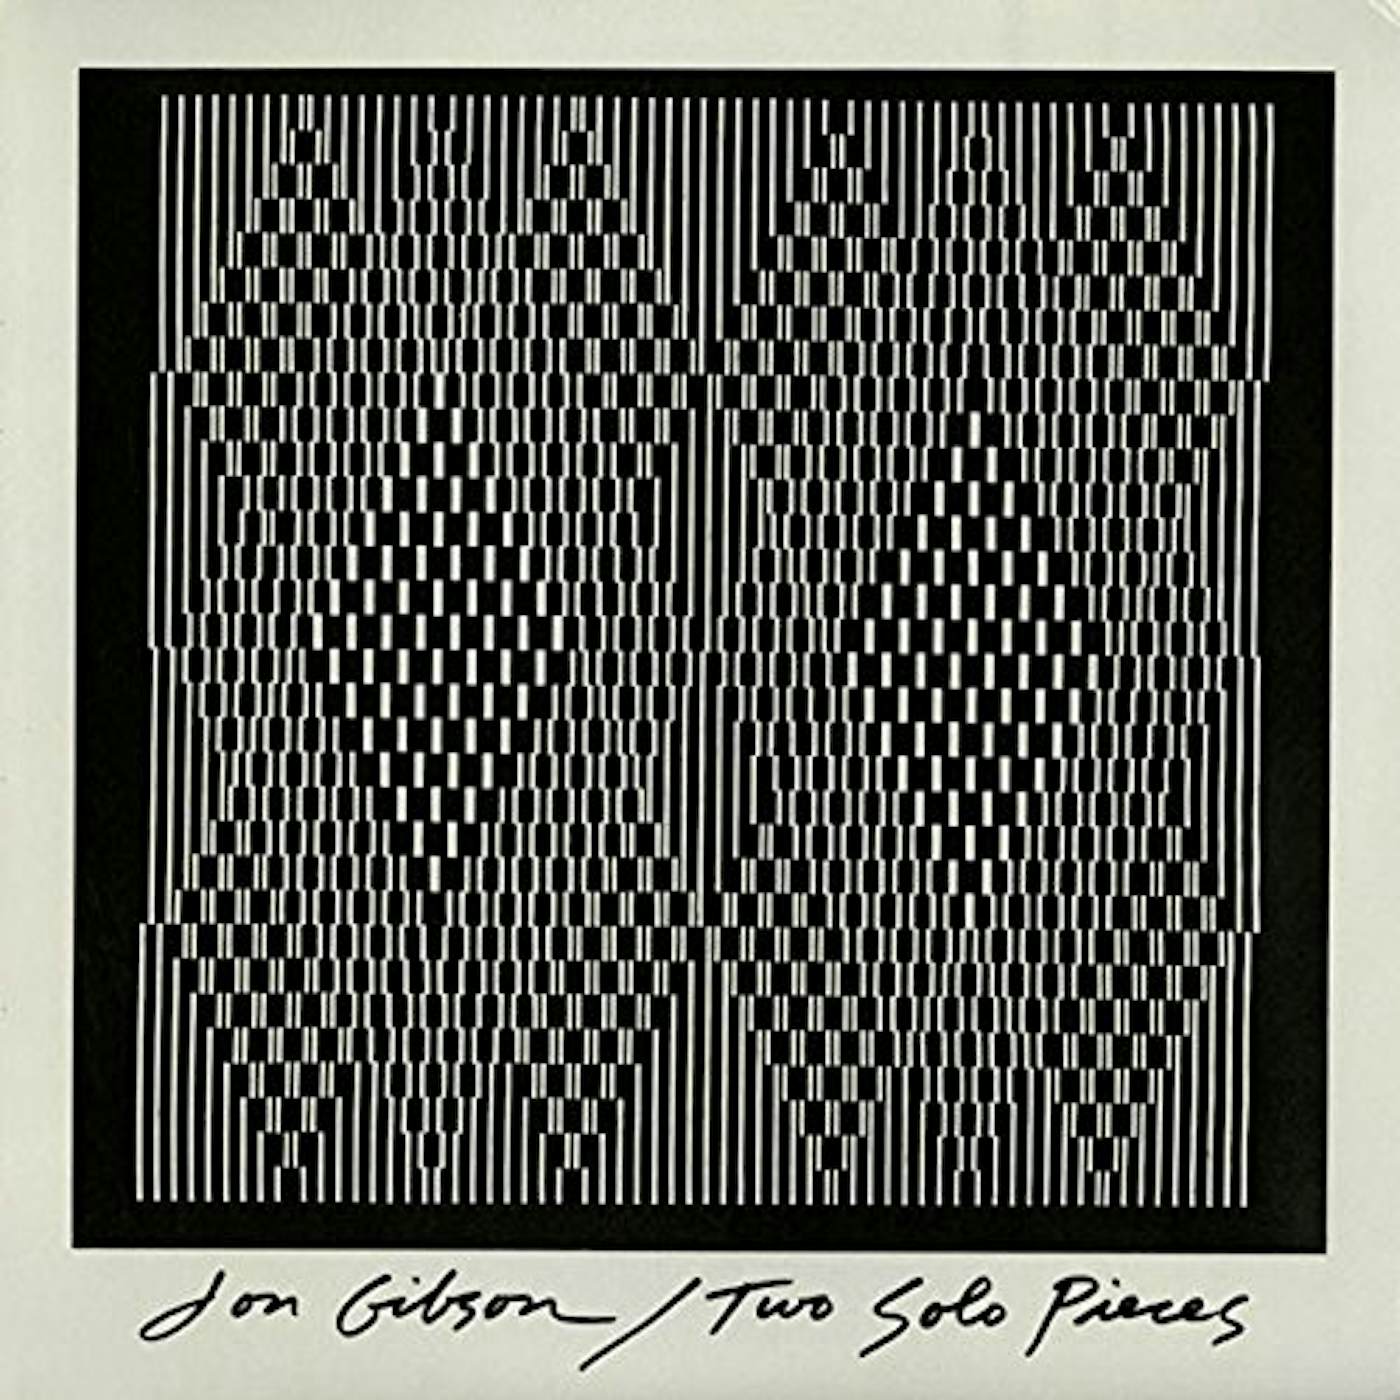 Jon Gibson Two Solo Pieces Vinyl Record